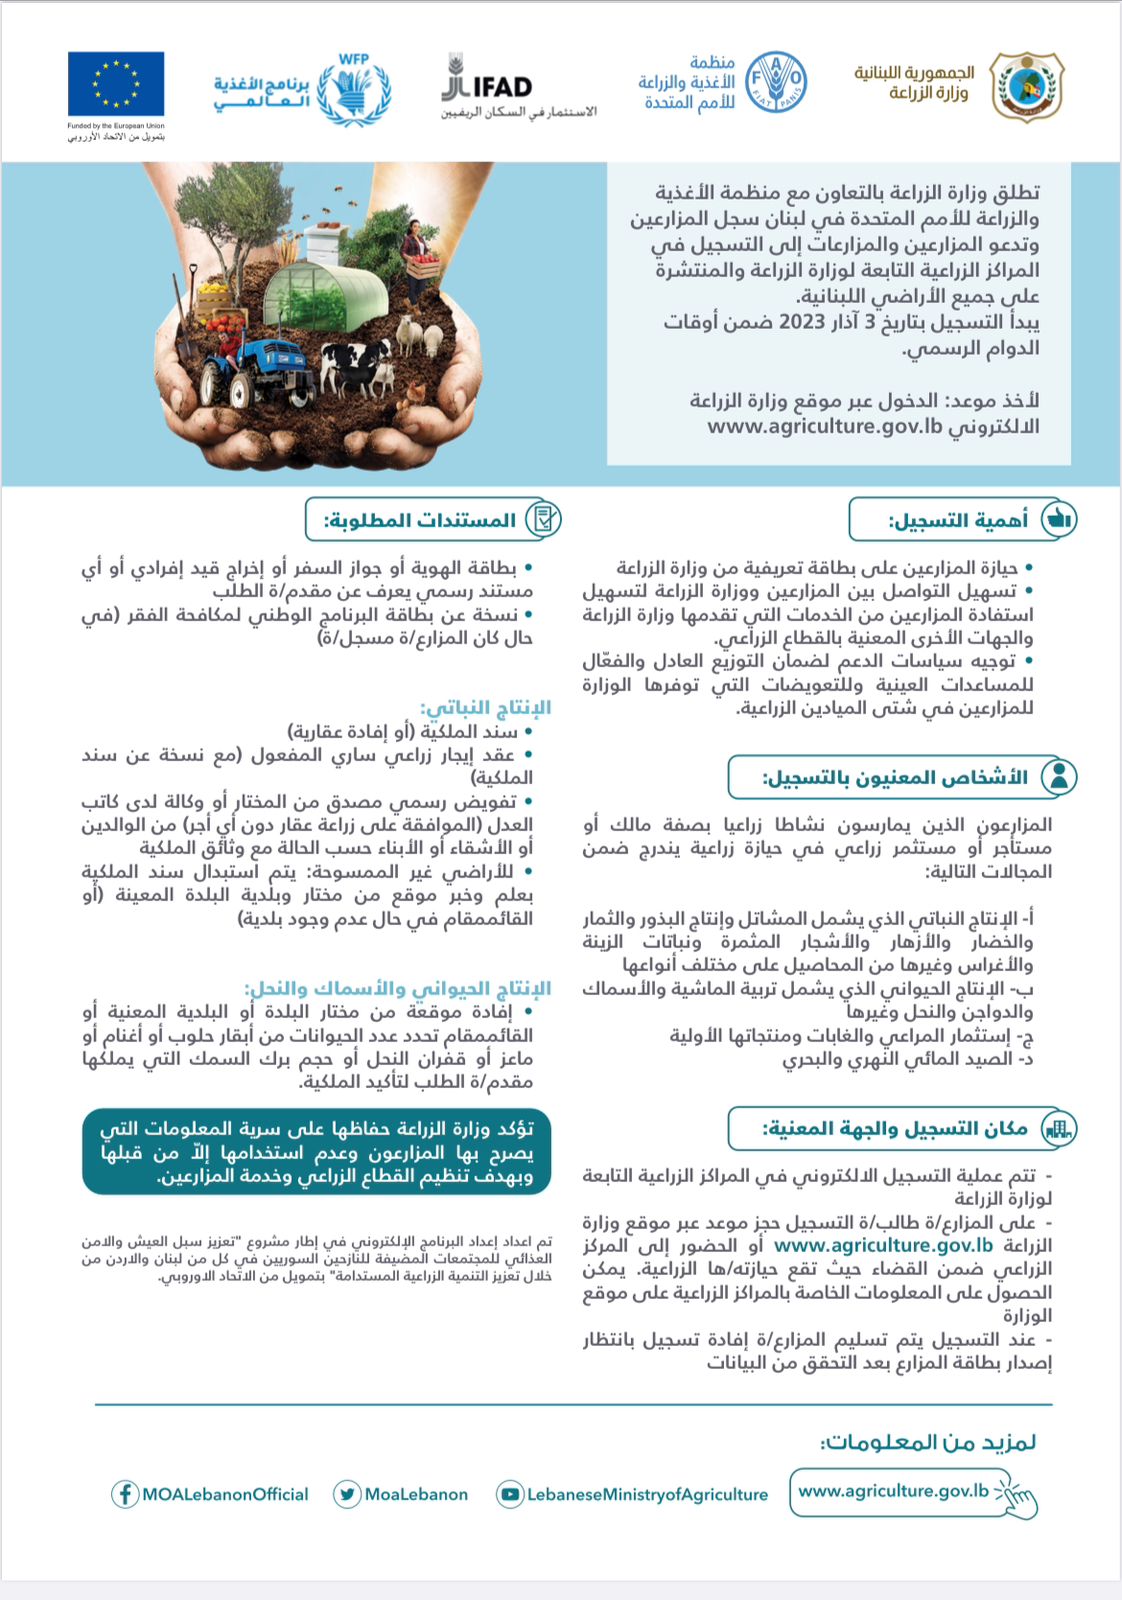 رسالة لمزارعي ومزارعات لبنان كافة: سجّلوا زرعكم واحفظوا حقّكم!